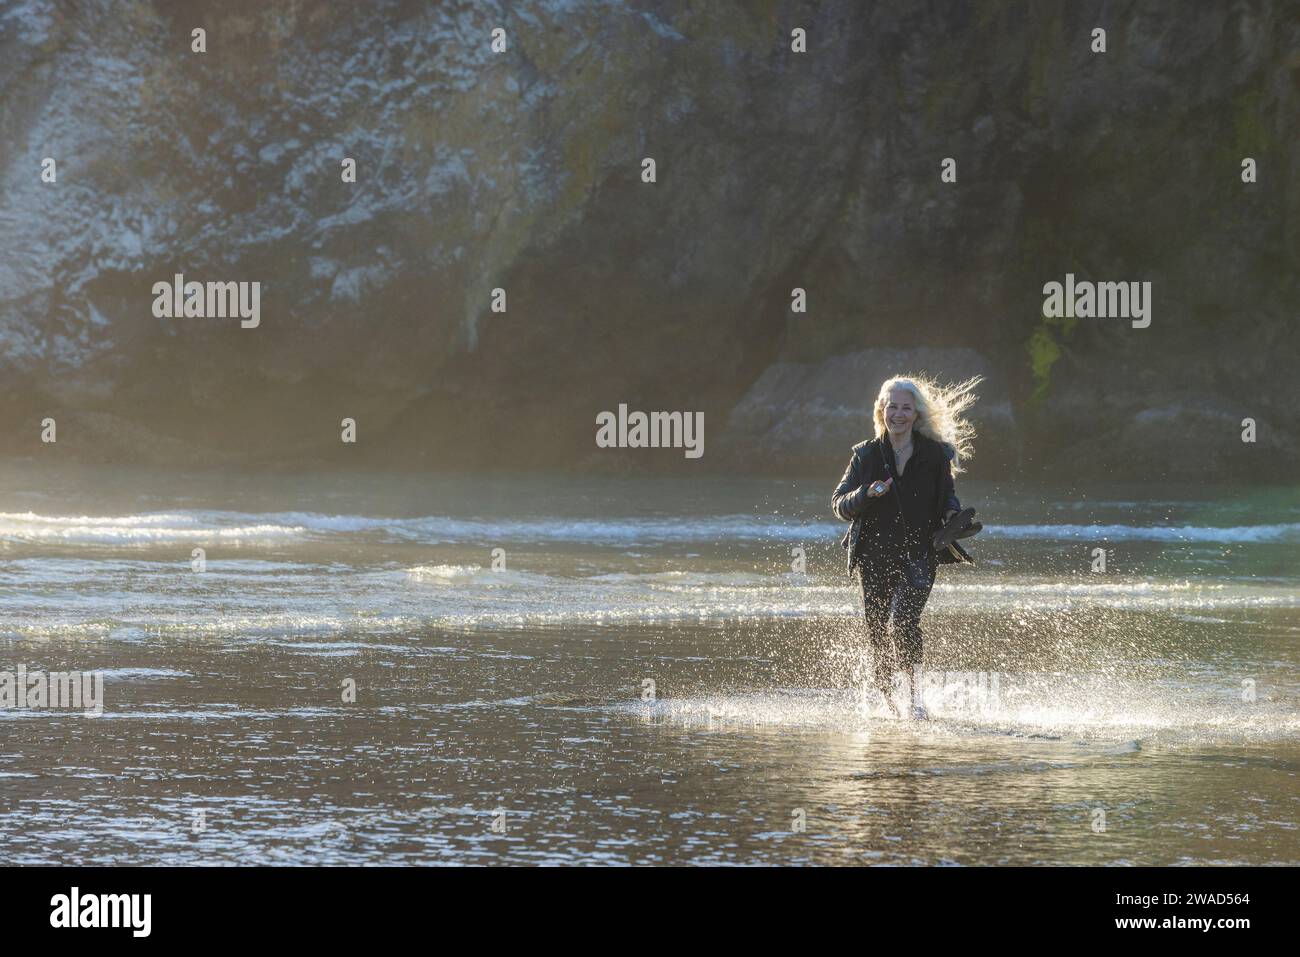 USA, Oregon, Newport, femme courant sur la plage de sable et éclaboussant de l'eau Banque D'Images